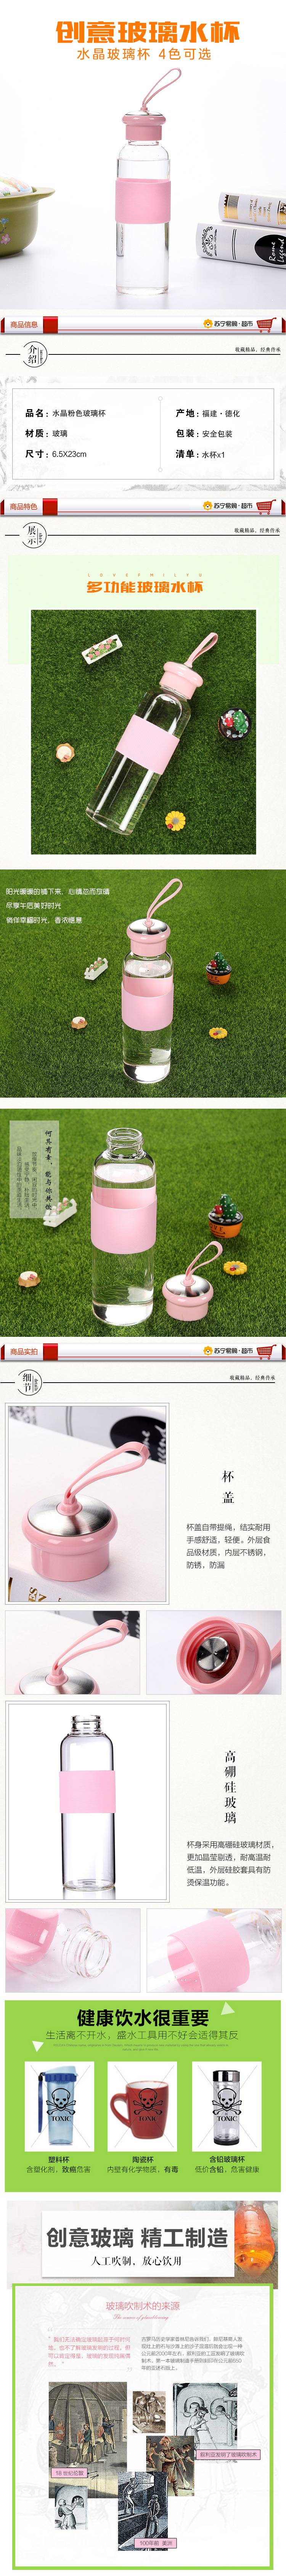 艺宏堂 水晶粉色玻璃杯 创意水杯玻璃杯 4色可选